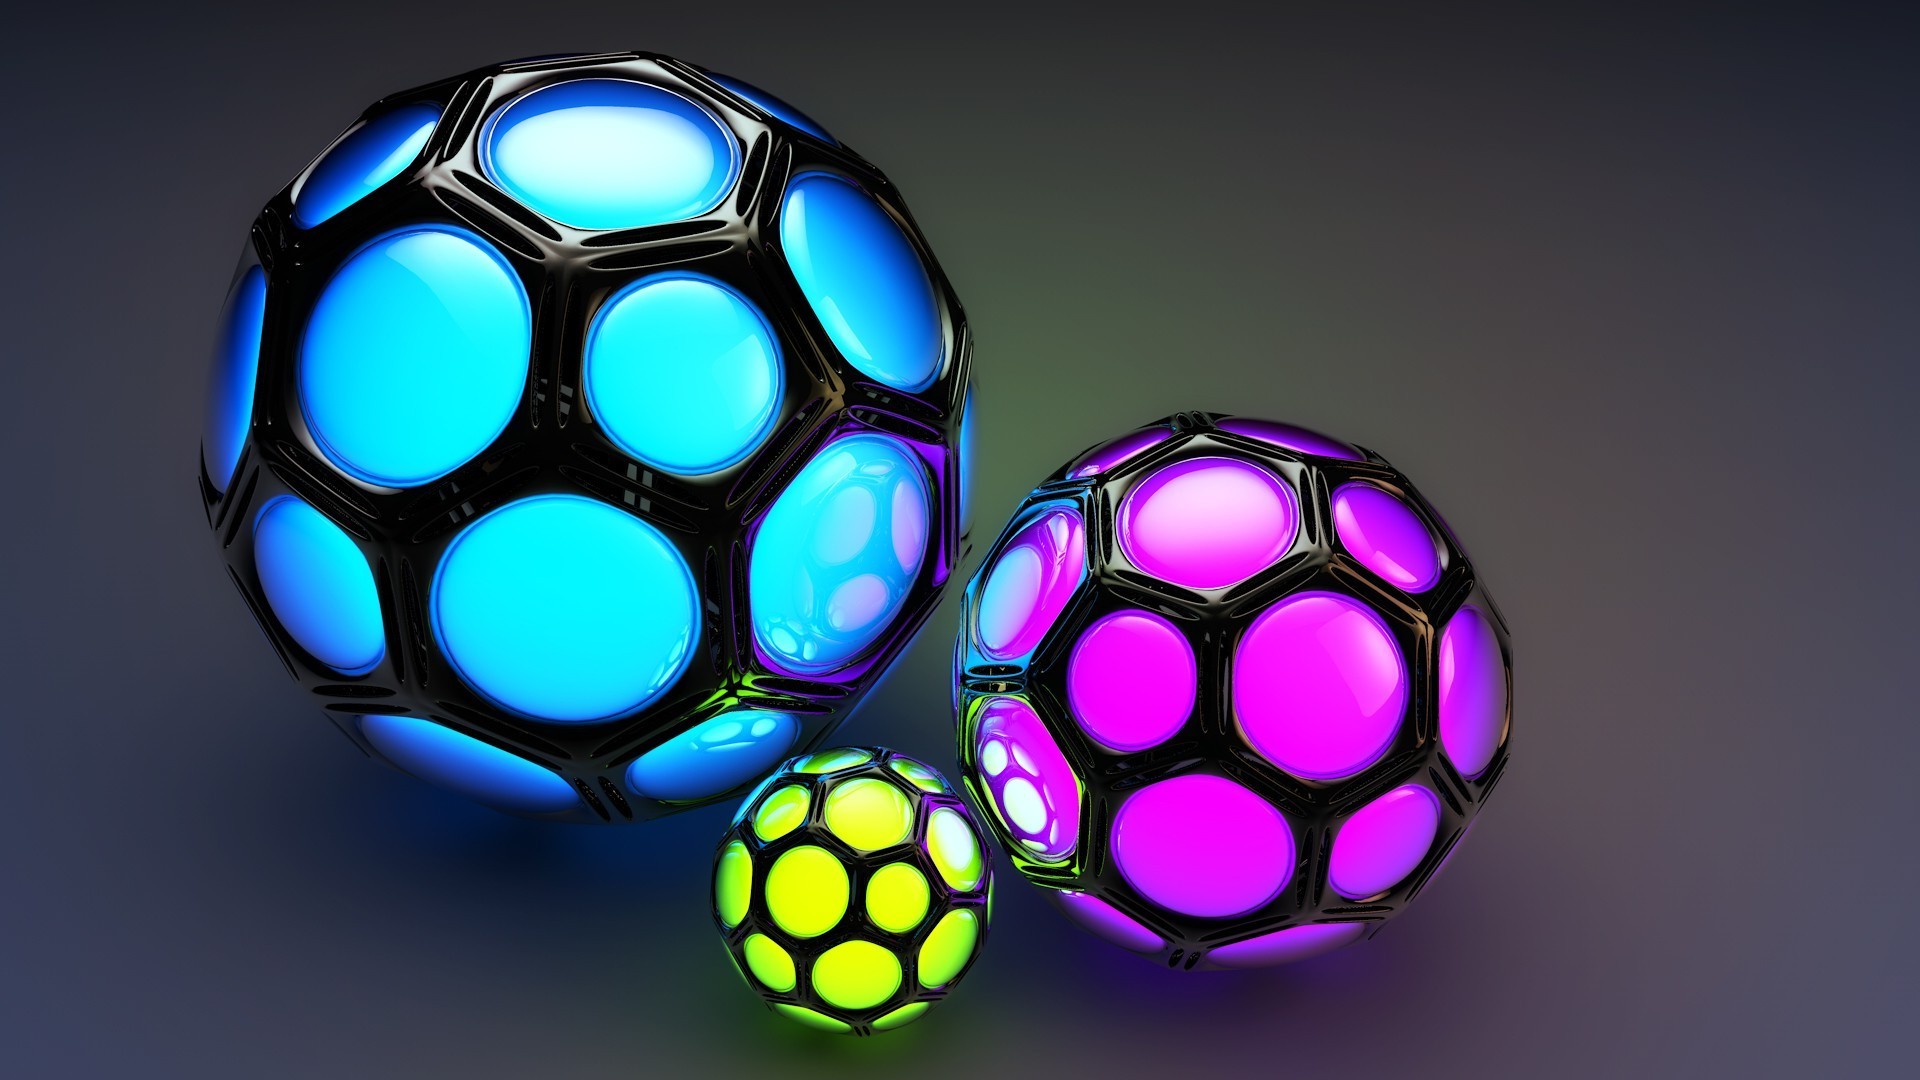 3 d balls. 3д обои. 3д обои на рабочий стол. Цветные мячики. Яркие обои 3d.